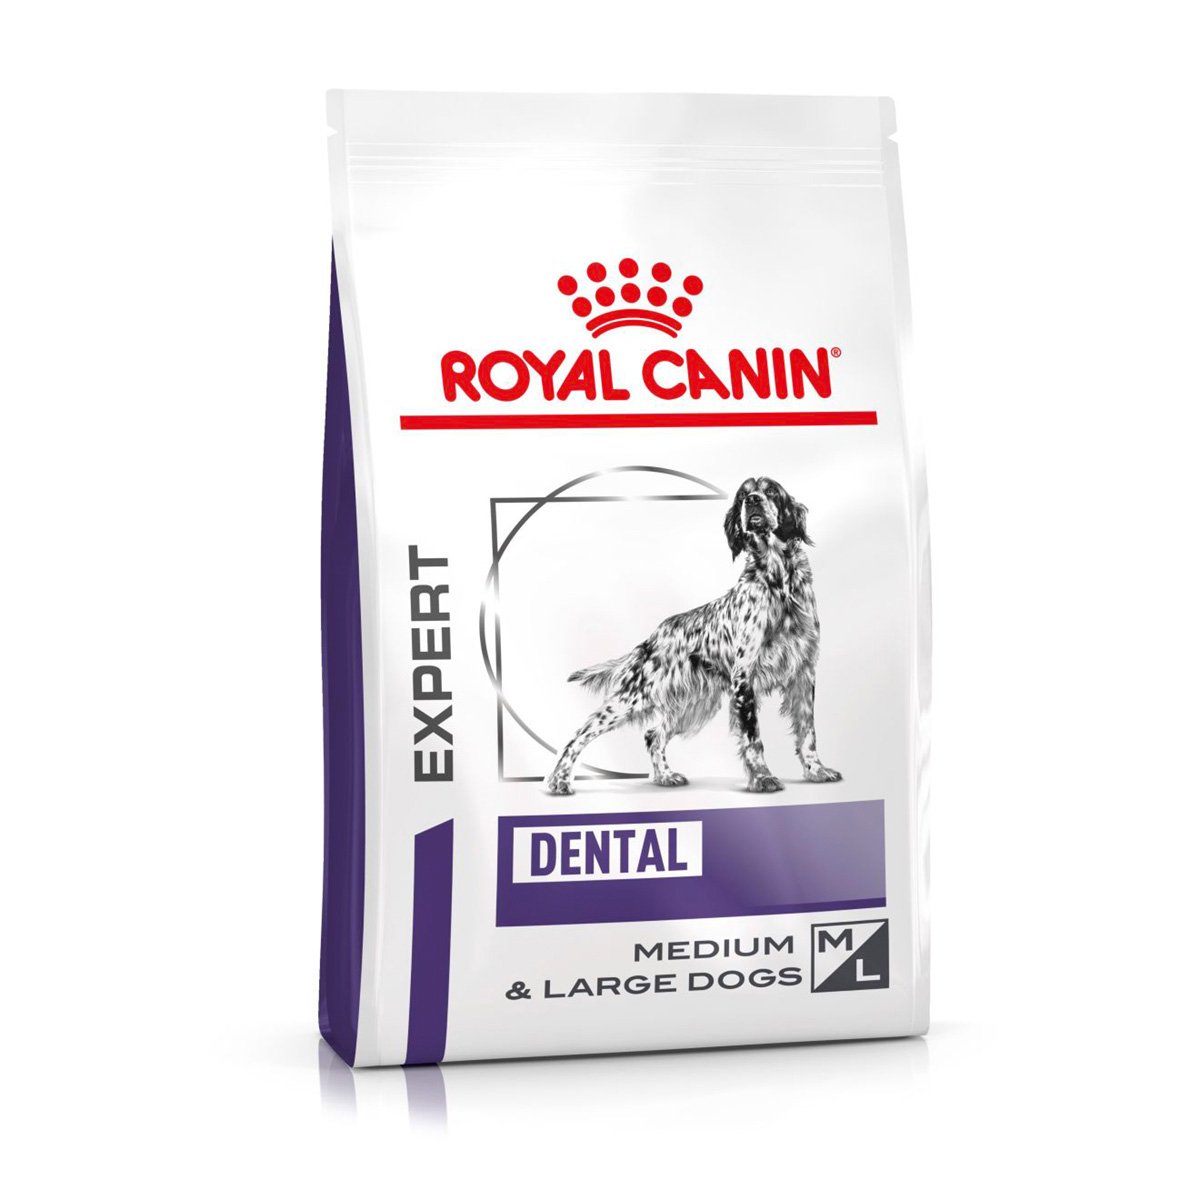 ROYAL CANIN® Expert DENTAL MEDIUM & LARGE DOGS Trockenfutter für Hunde 13kg von Royal Canin